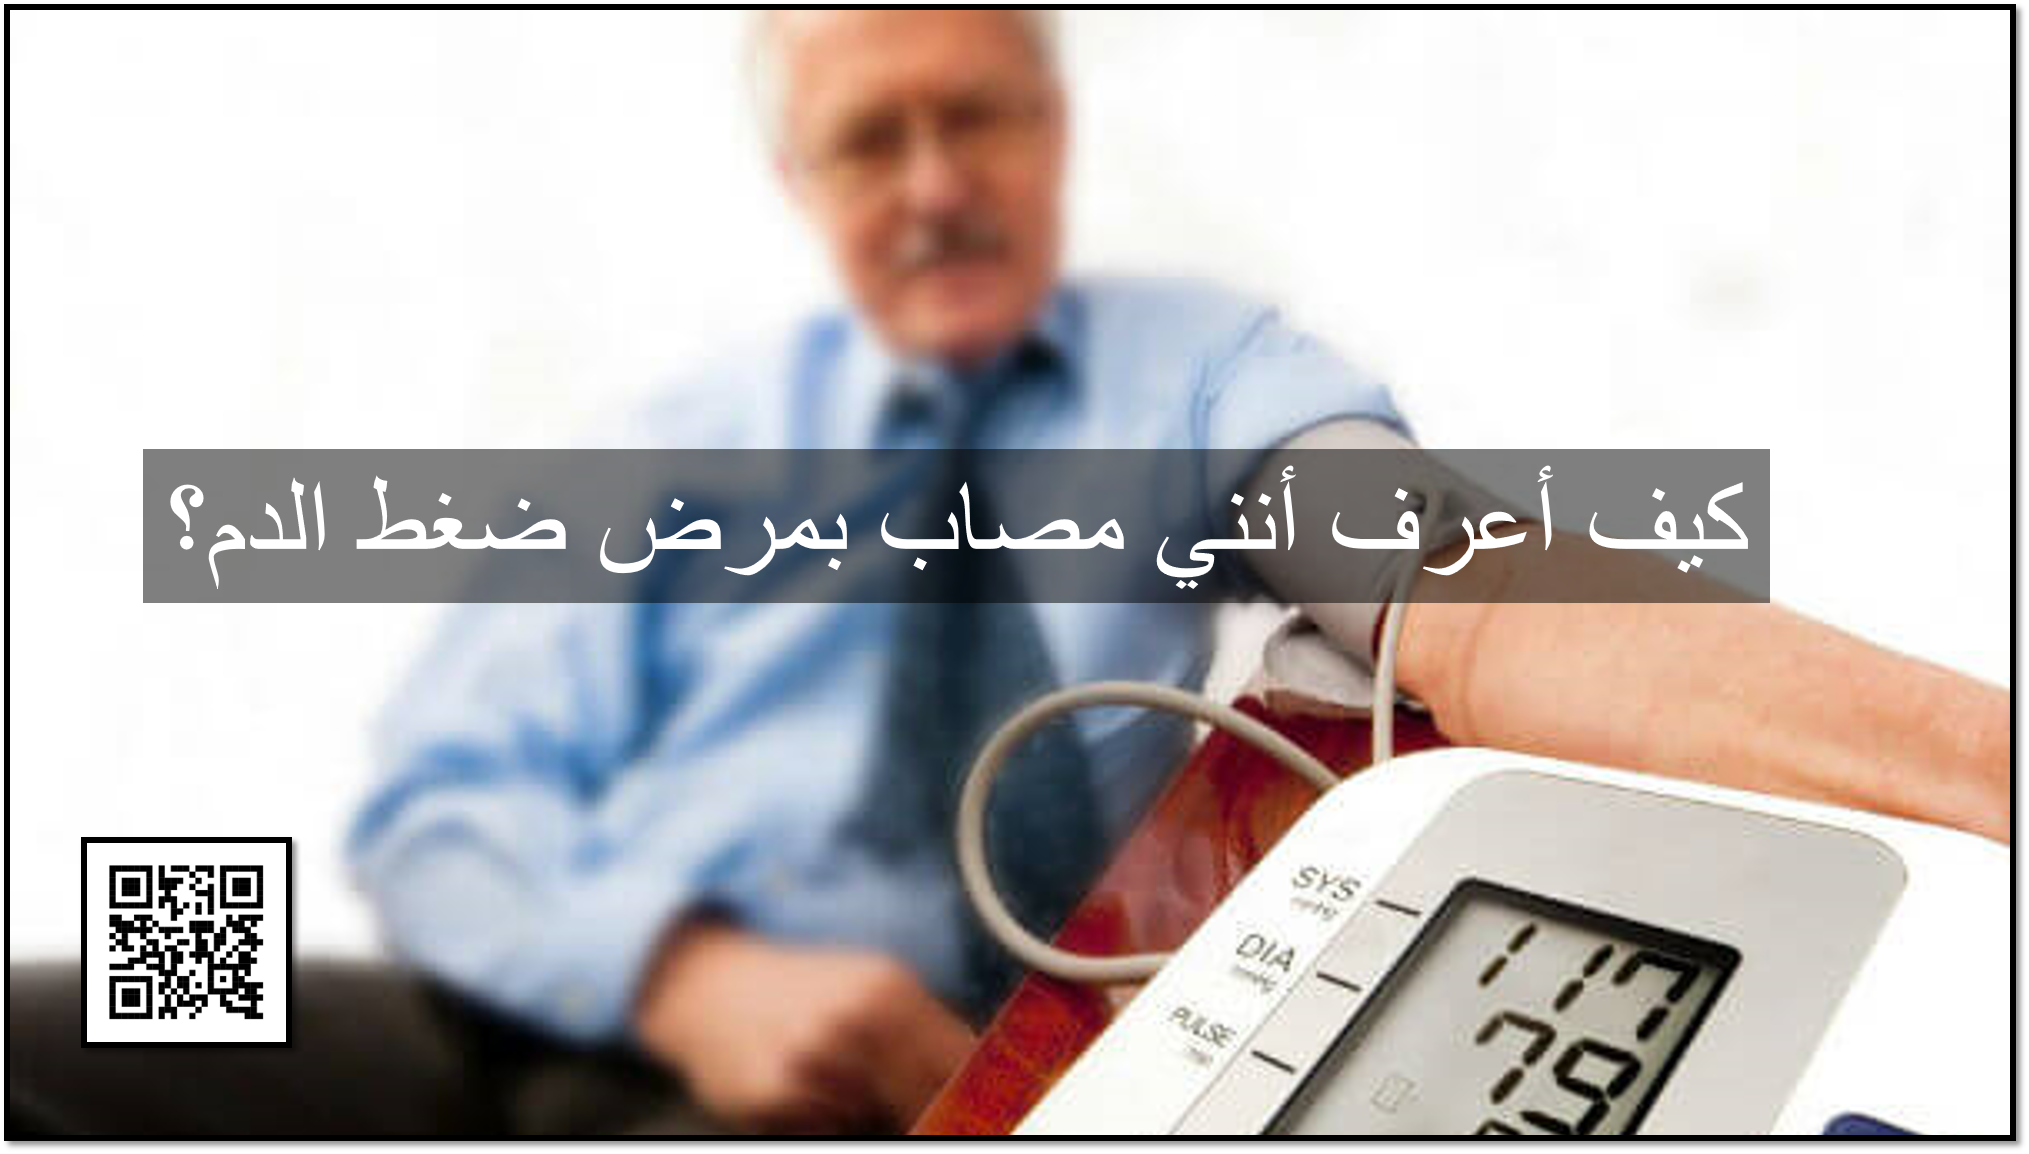 كيف أعرف أنني مصاب بمرض ضغط الدم؟